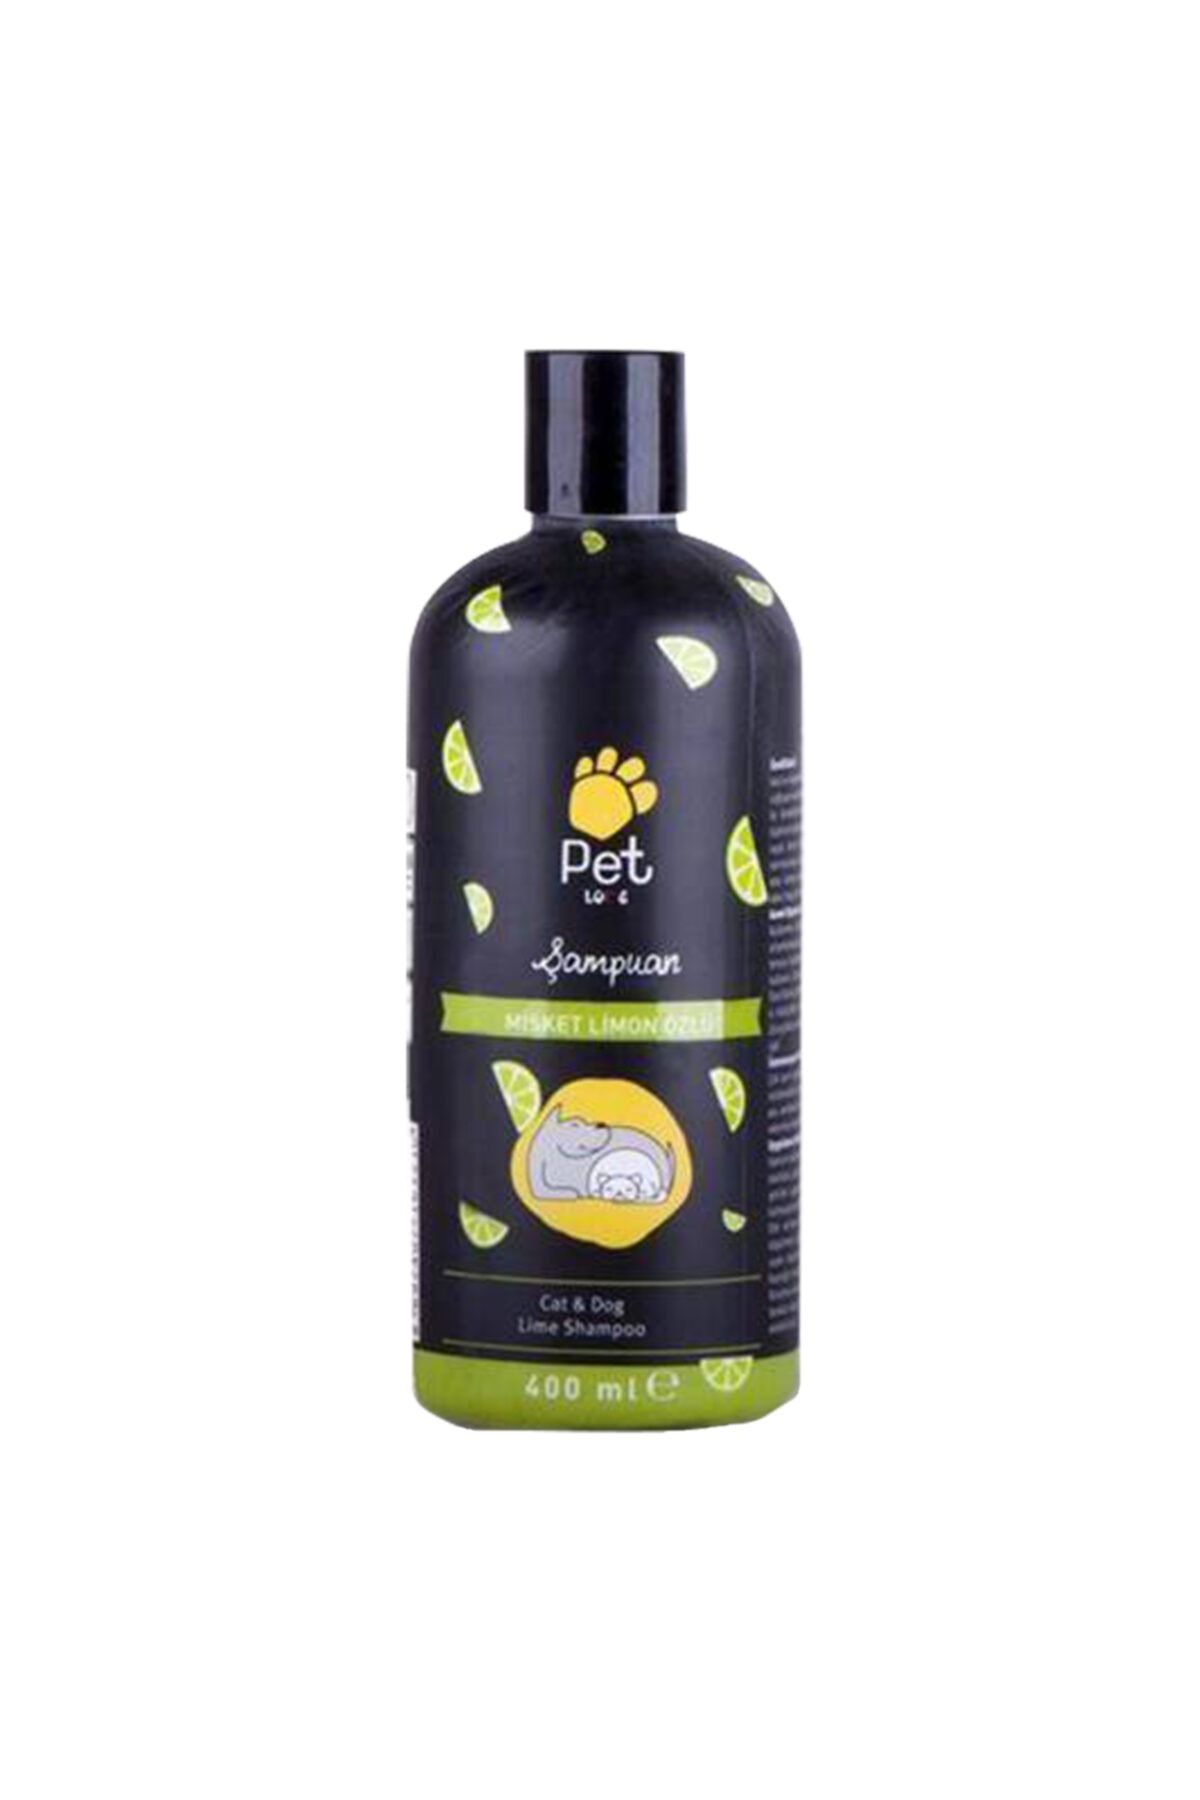 Pet Love Kedi Ve Köpek 400ml Şampuan Misket Limon Kokulu